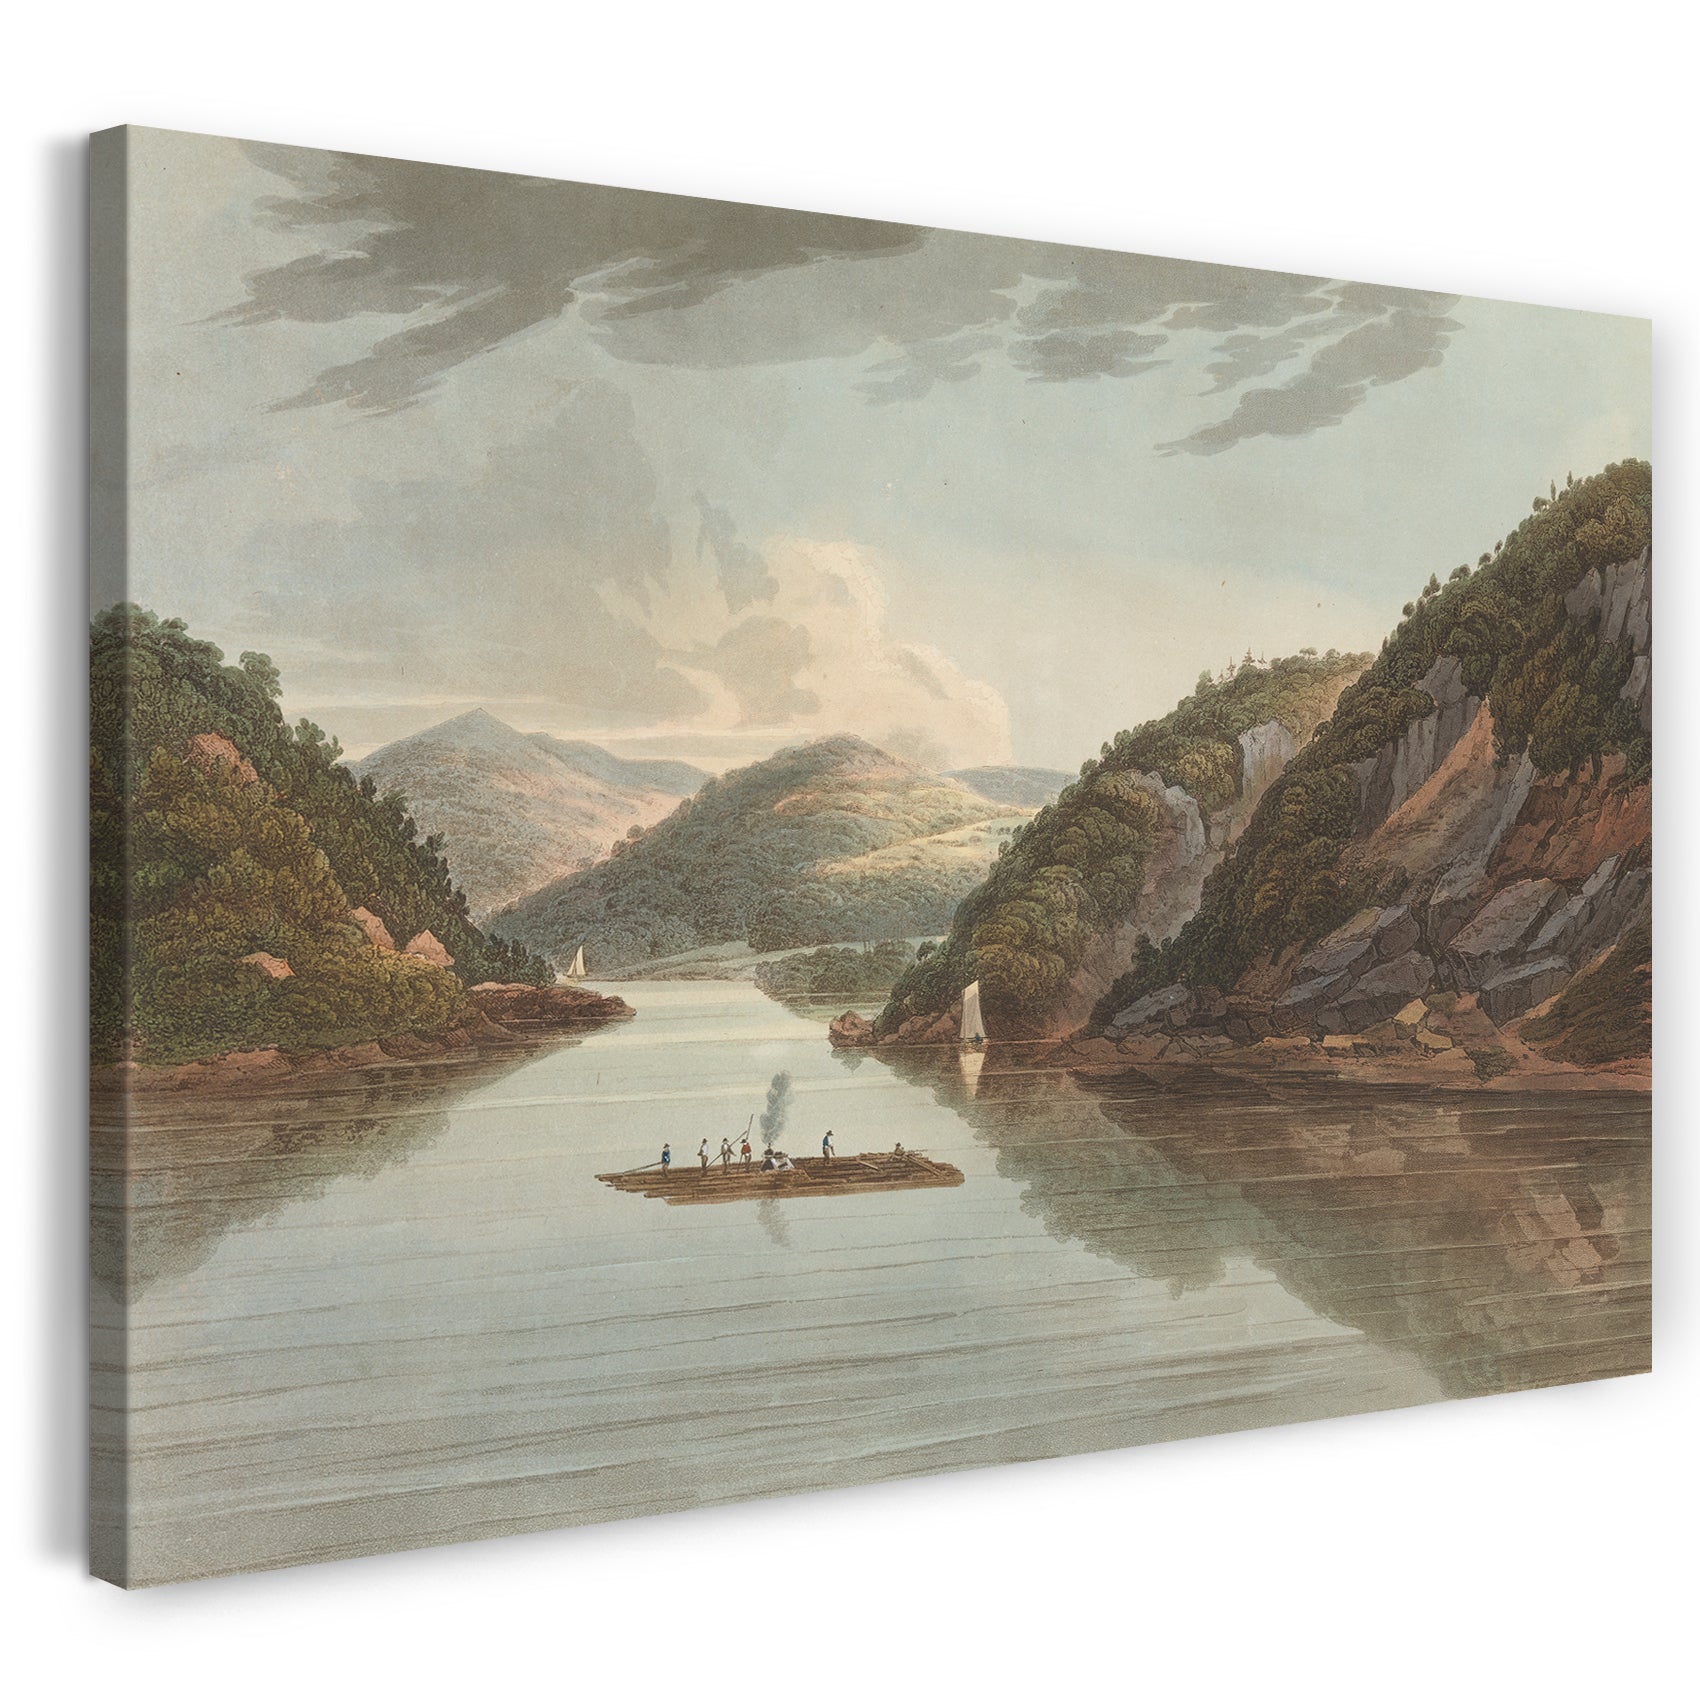 Leinwandbild Das Hudson River Portfolio - In der Nähe von Fort Montgomery (Nr. 22 (später zu Nr. 18 geändert) von The Hudson River Portfolio)